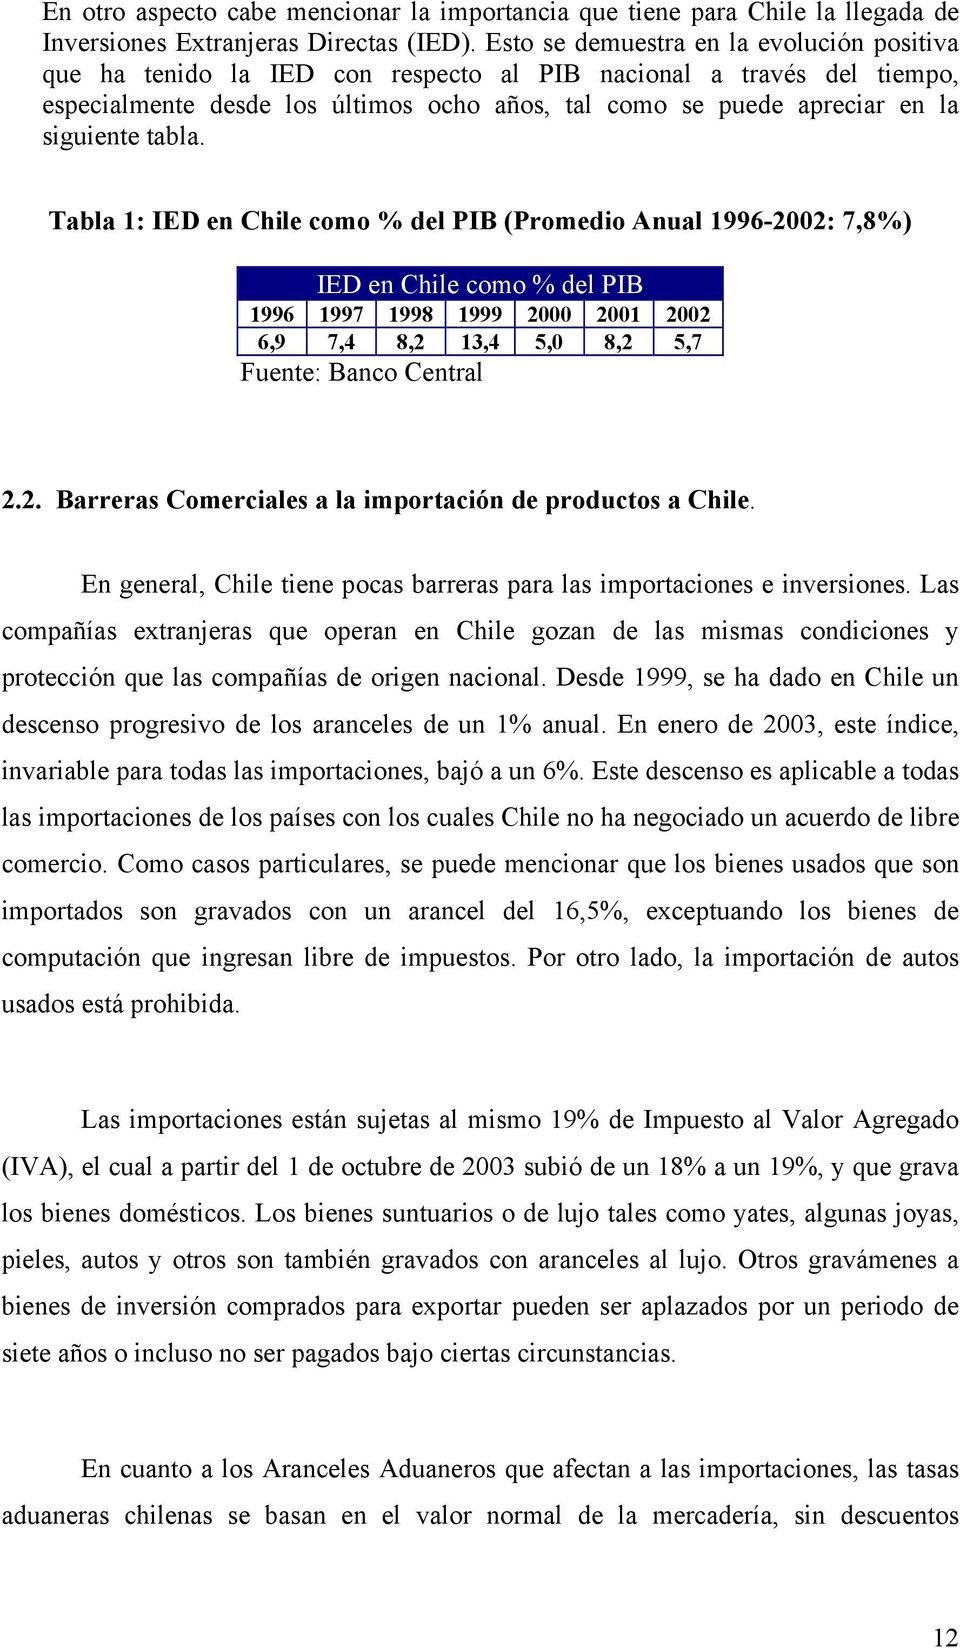 tabla. Tabla 1: IED en Chile como % del PIB (Promedio Anual 1996-2002: 7,8%) IED en Chile como % del PIB 1996 1997 1998 1999 2000 2001 2002 6,9 7,4 8,2 13,4 5,0 8,2 5,7 Fuente: Banco Central 2.2. Barreras Comerciales a la importación de productos a Chile.